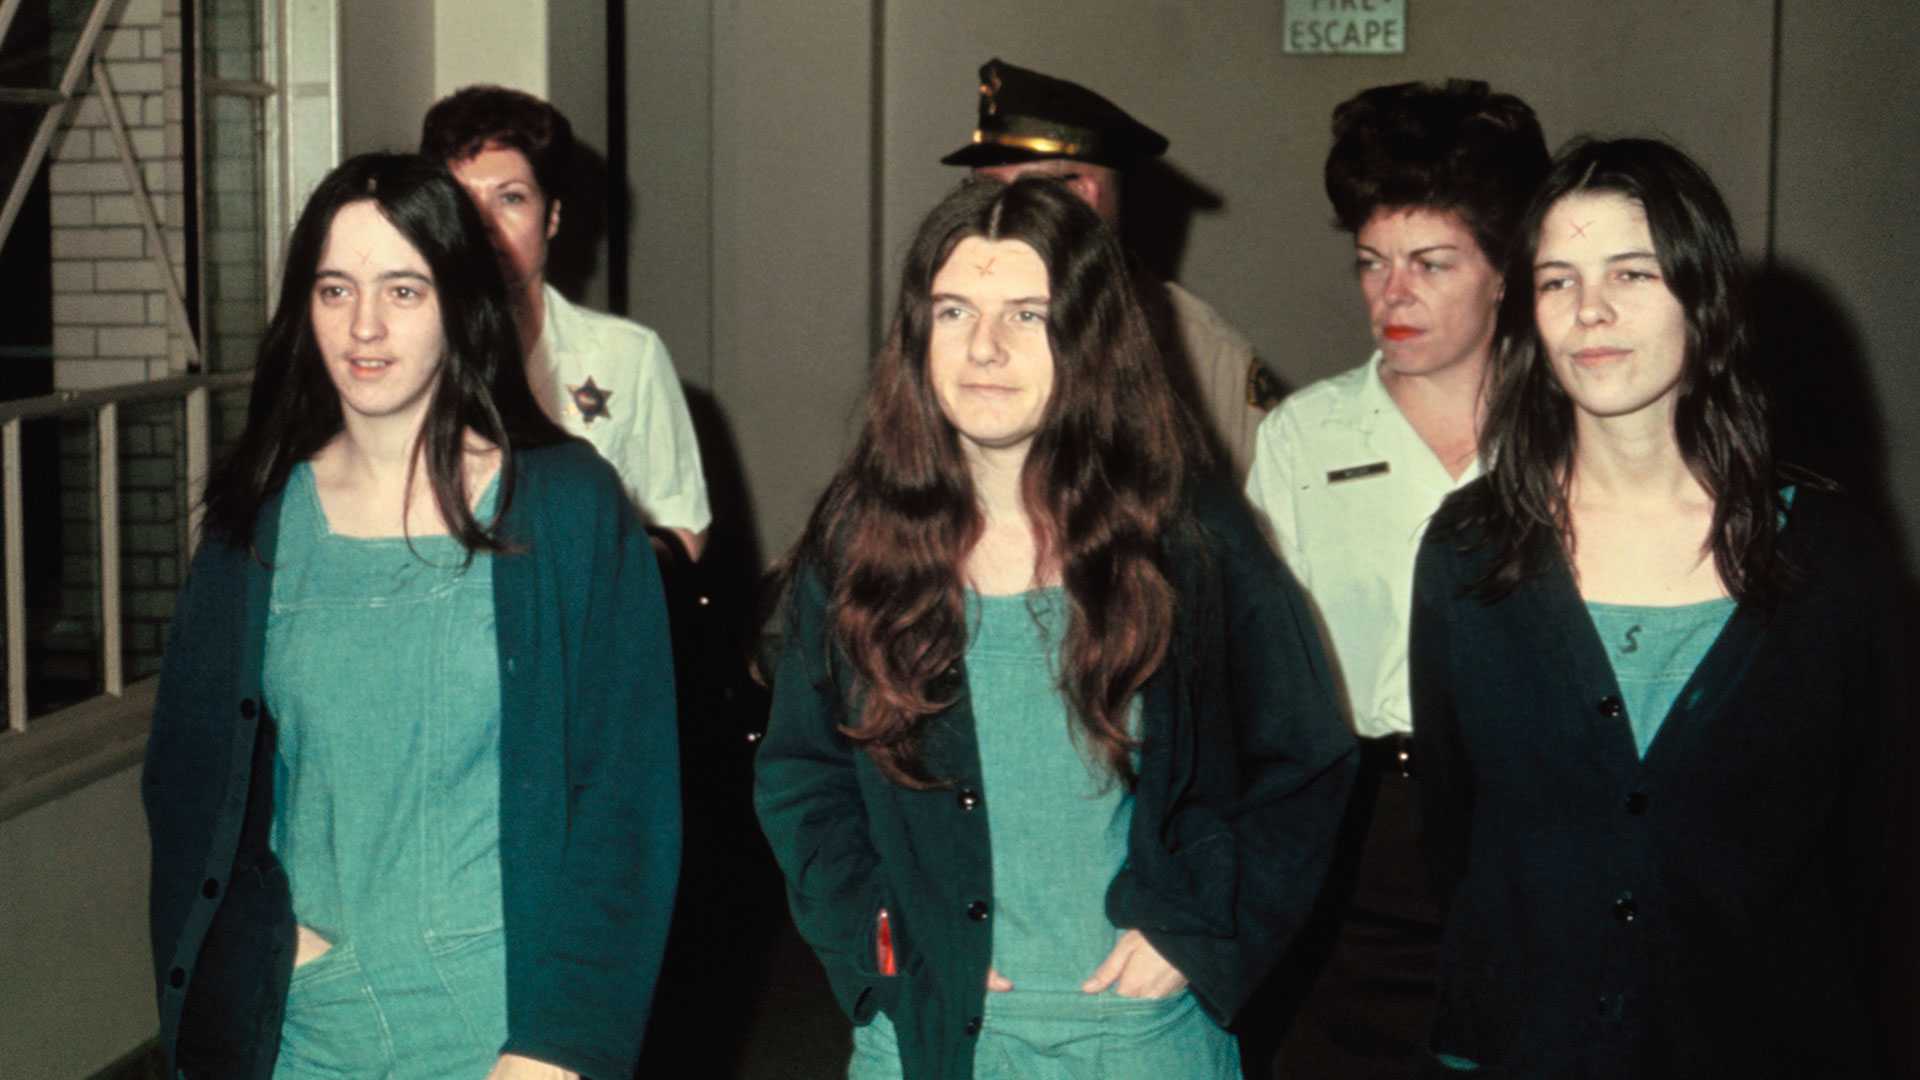 De la orgía de sangre a la cárcel: qué pasó con las chicas asesinas que idolatraban a Charles Manson